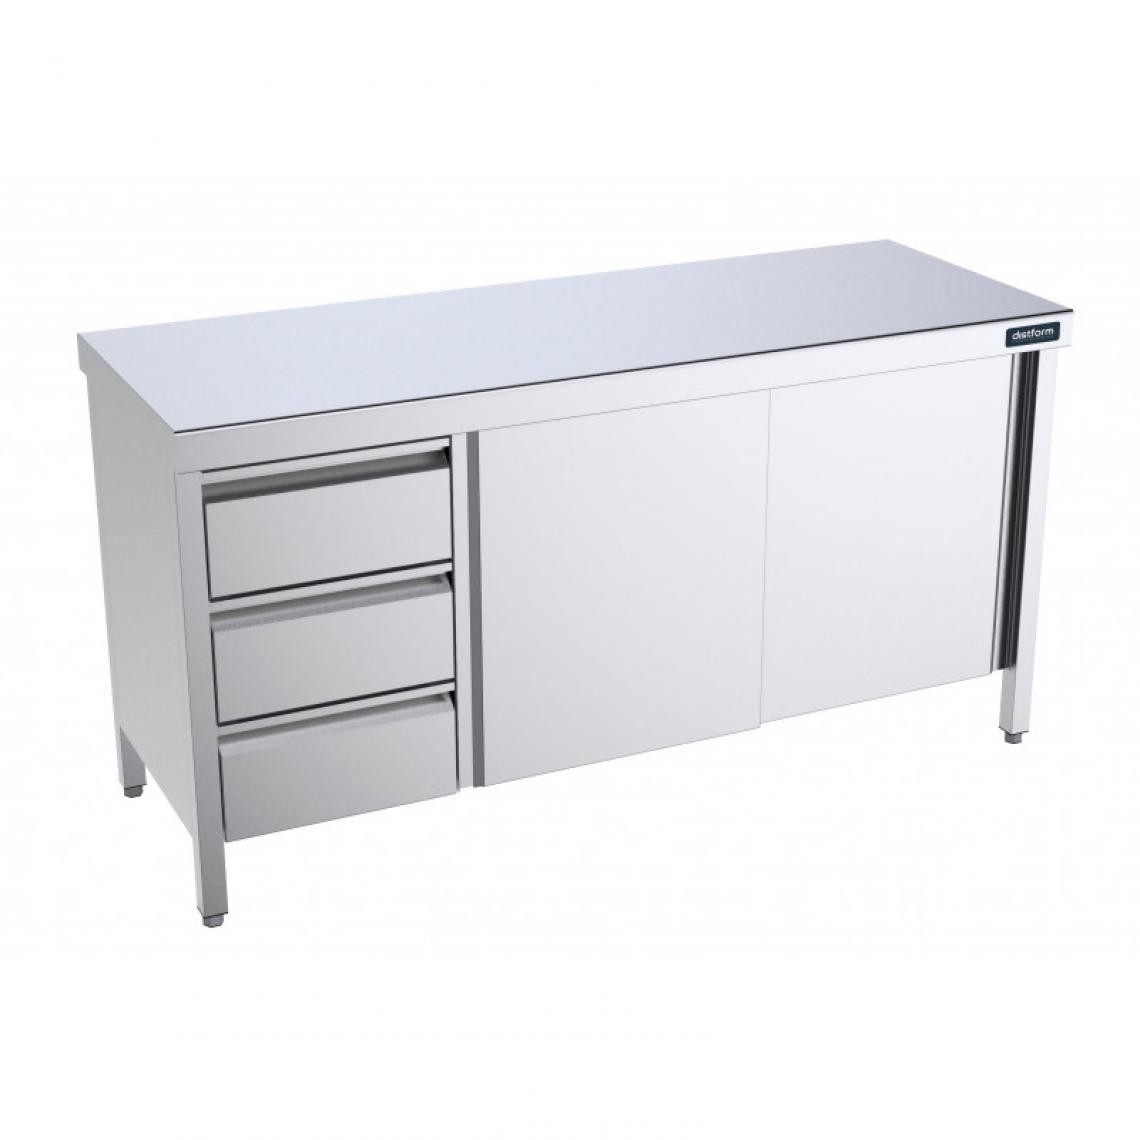 DISTFORM - Table Inox centrale avec portes coulissantes et tiroirs à gauche - Gamme 600 - Distform - Acier inoxydable1600x600 - Tables à manger